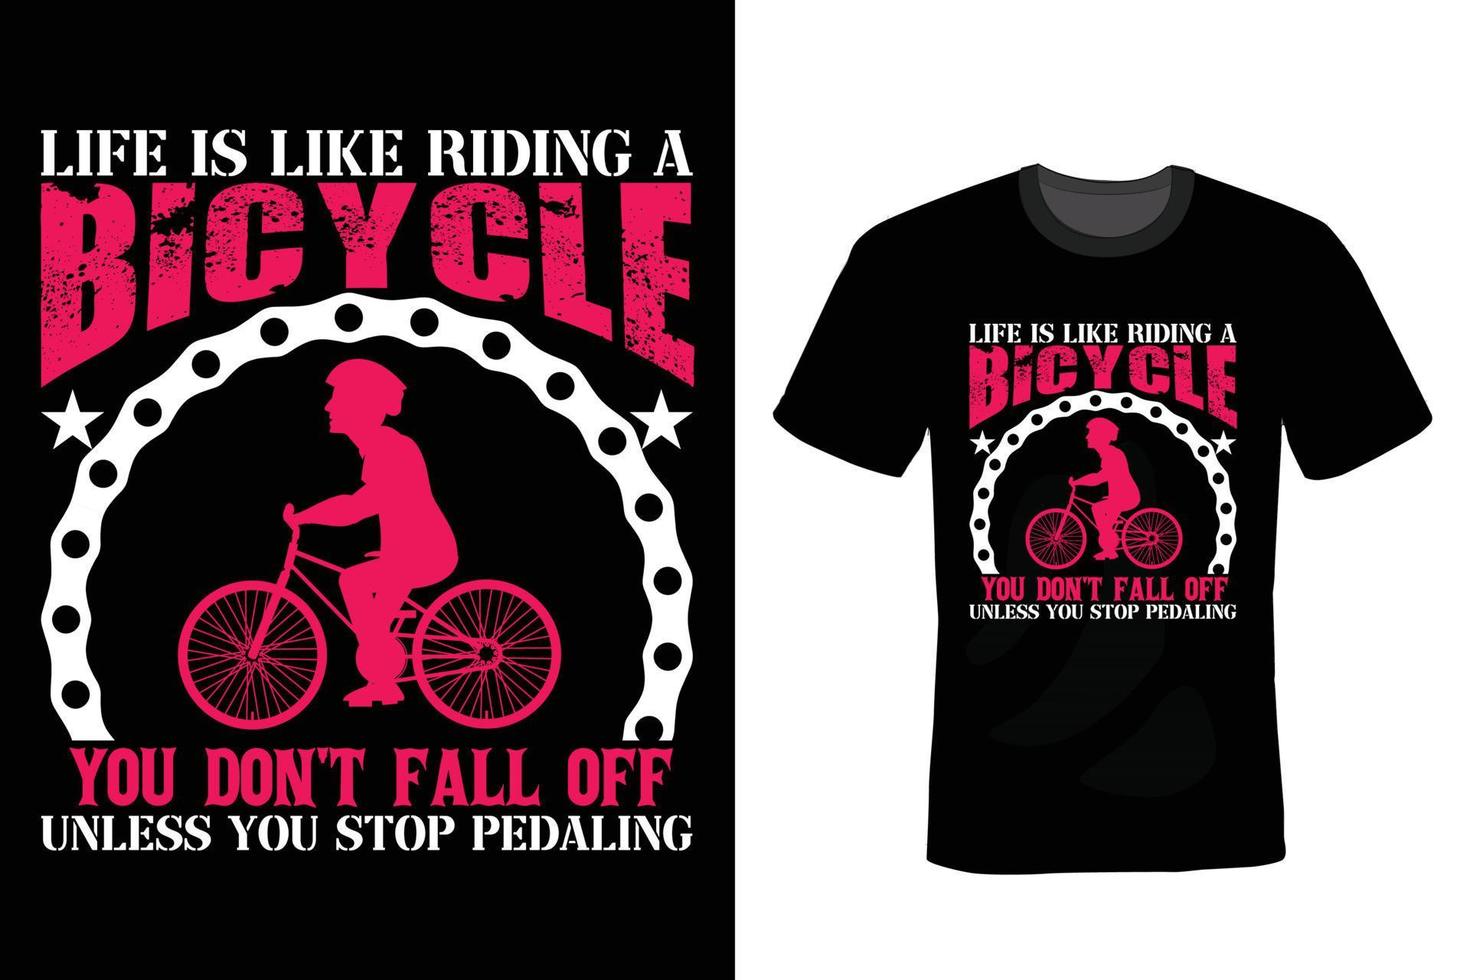 conception de t-shirt de vélo, vintage, typographie vecteur